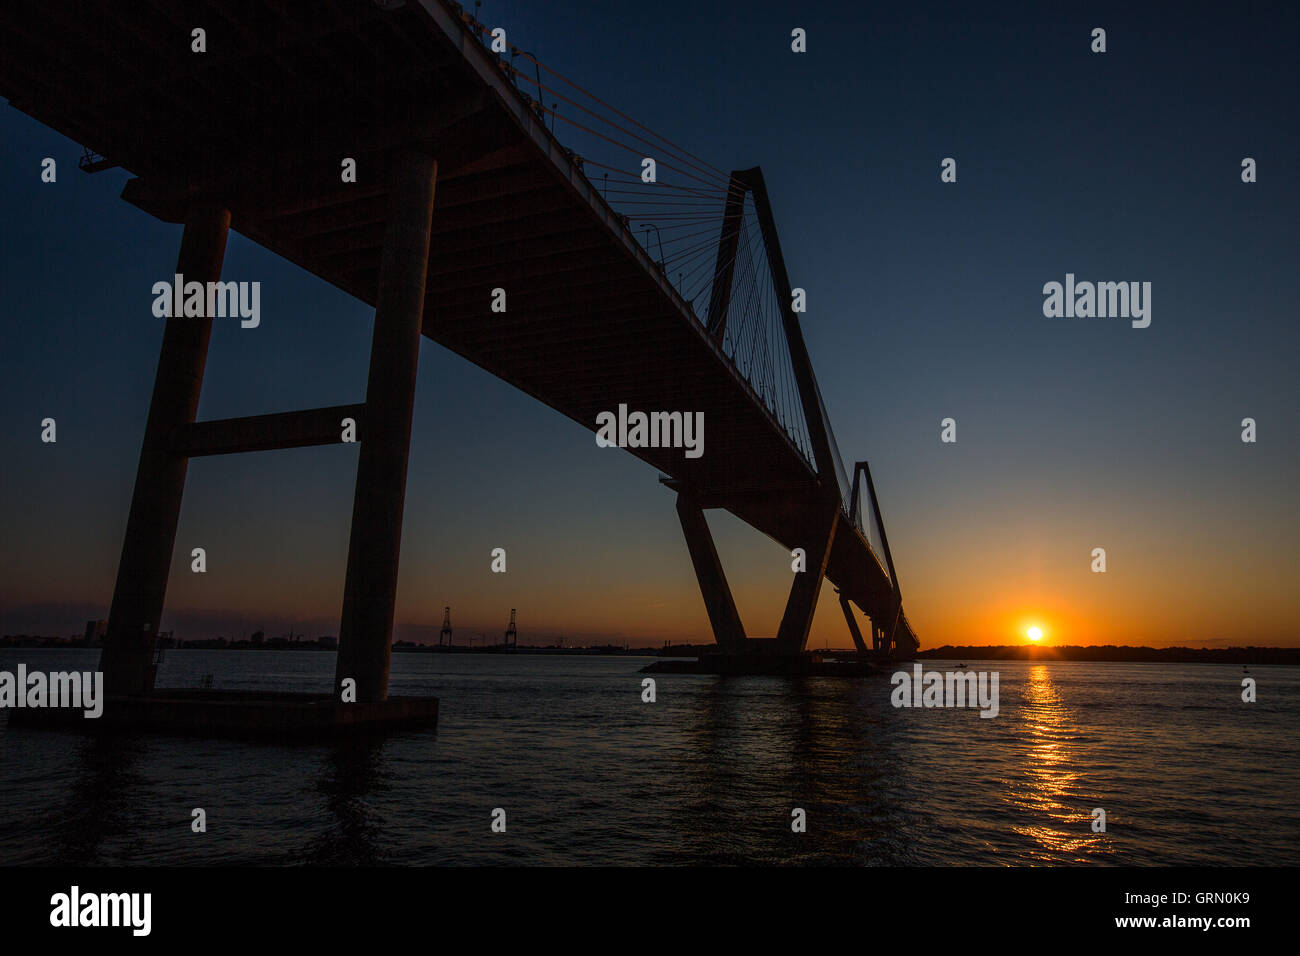 Sonnenuntergang am Ravenel Bridge in Charleston, S.C. Nutzung der Sonnenfinsternis Geschichte. Stockfoto